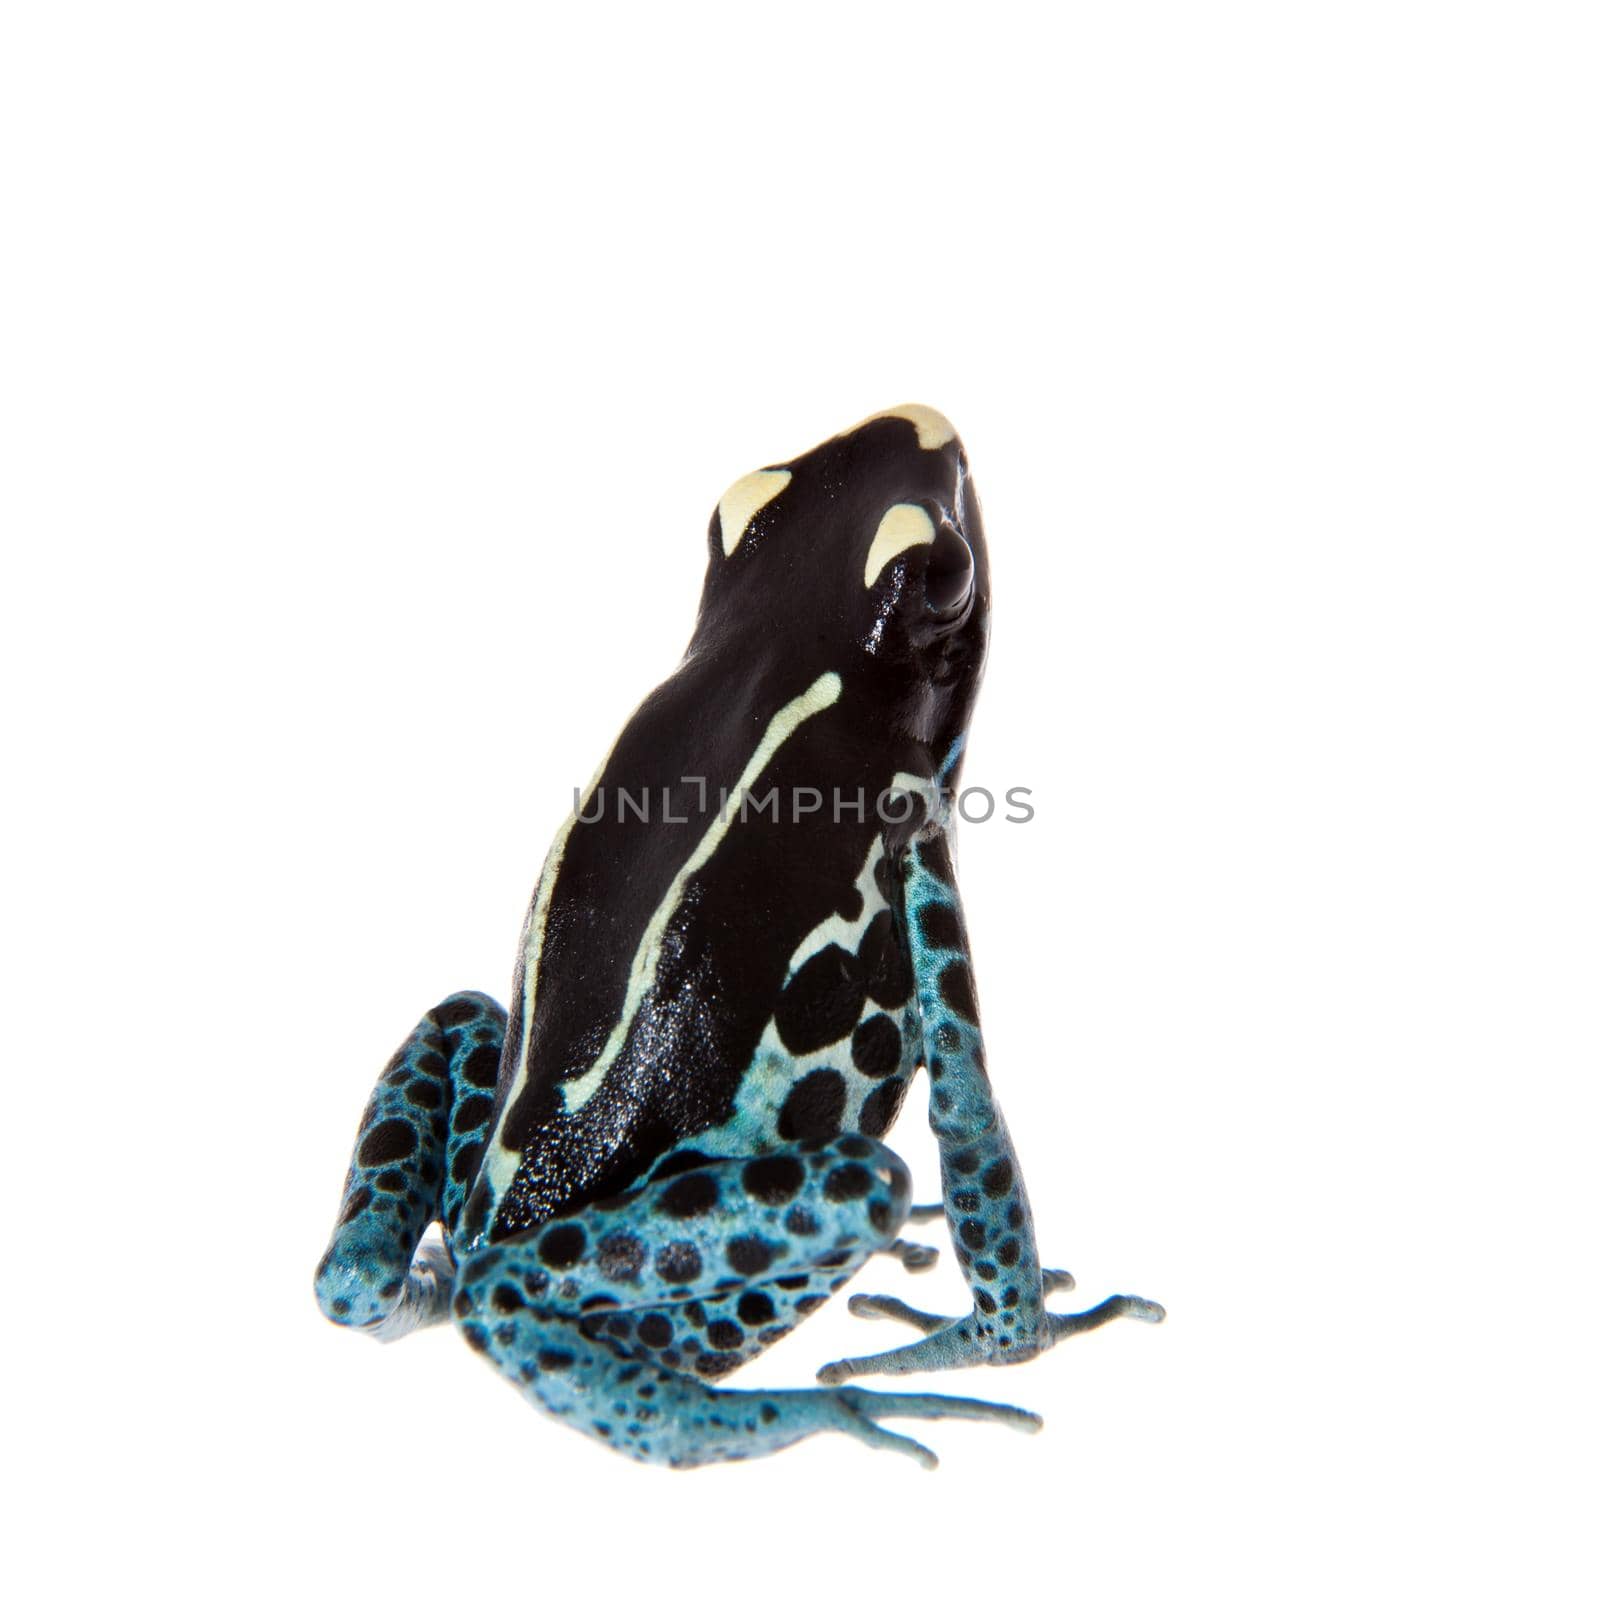 Awarape Blue Dyeing Poison Dart Frog, Dendrobates tinctorius, on white background.